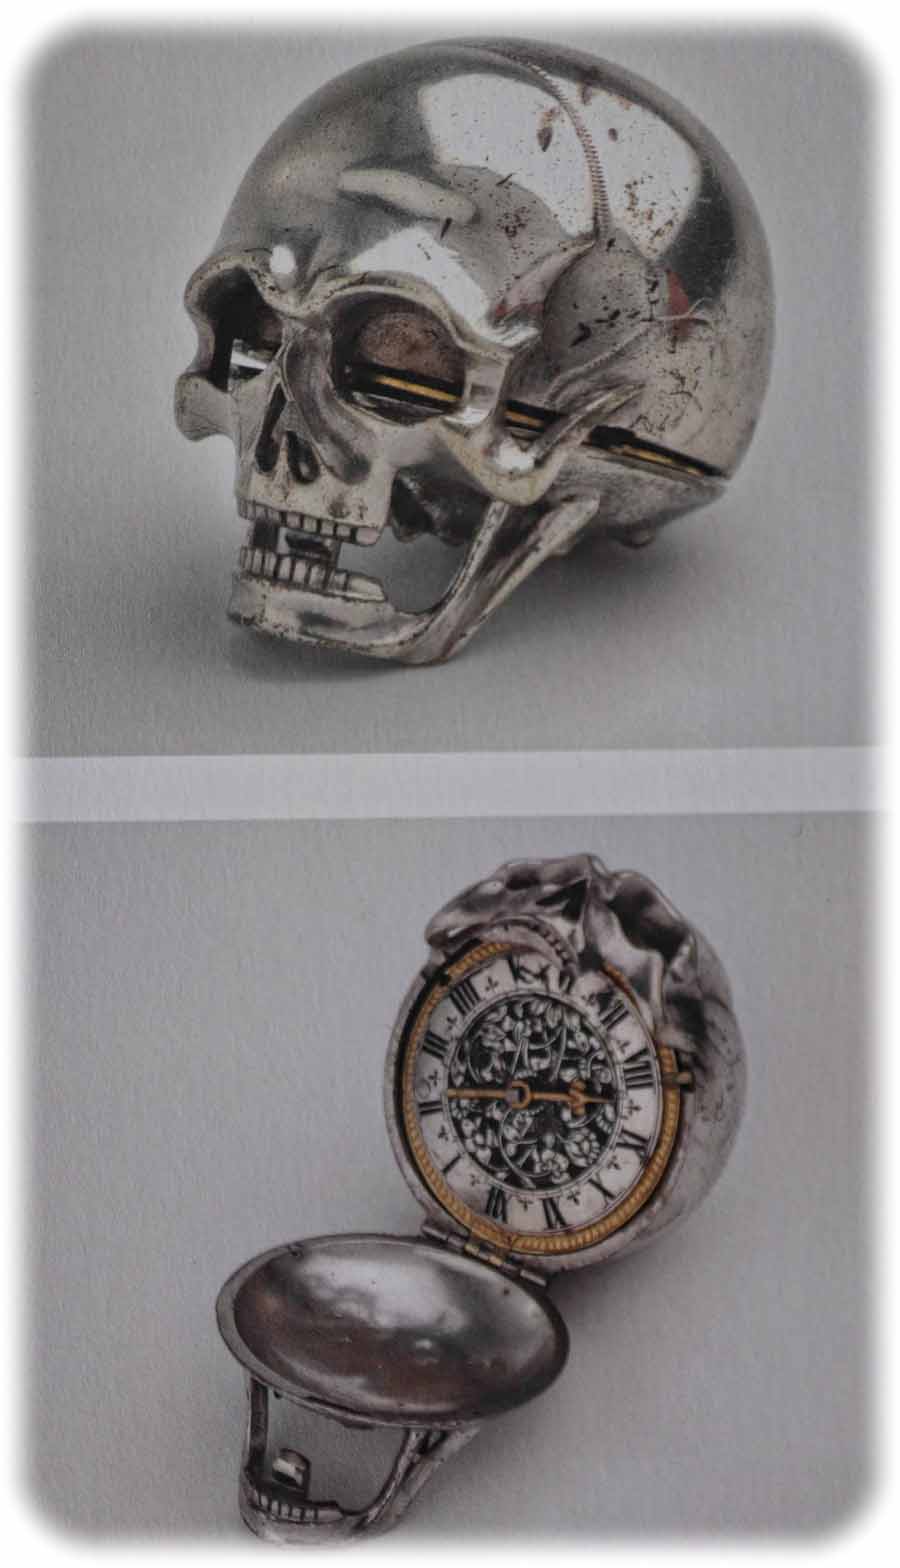 Jacques Joly schuf diese Totenkopfuhr um 1630 in Genf aus Silber, Messing und Stahl. Repro (CR) aus: "Mathematisch-Physikalischer Salon", Dresden